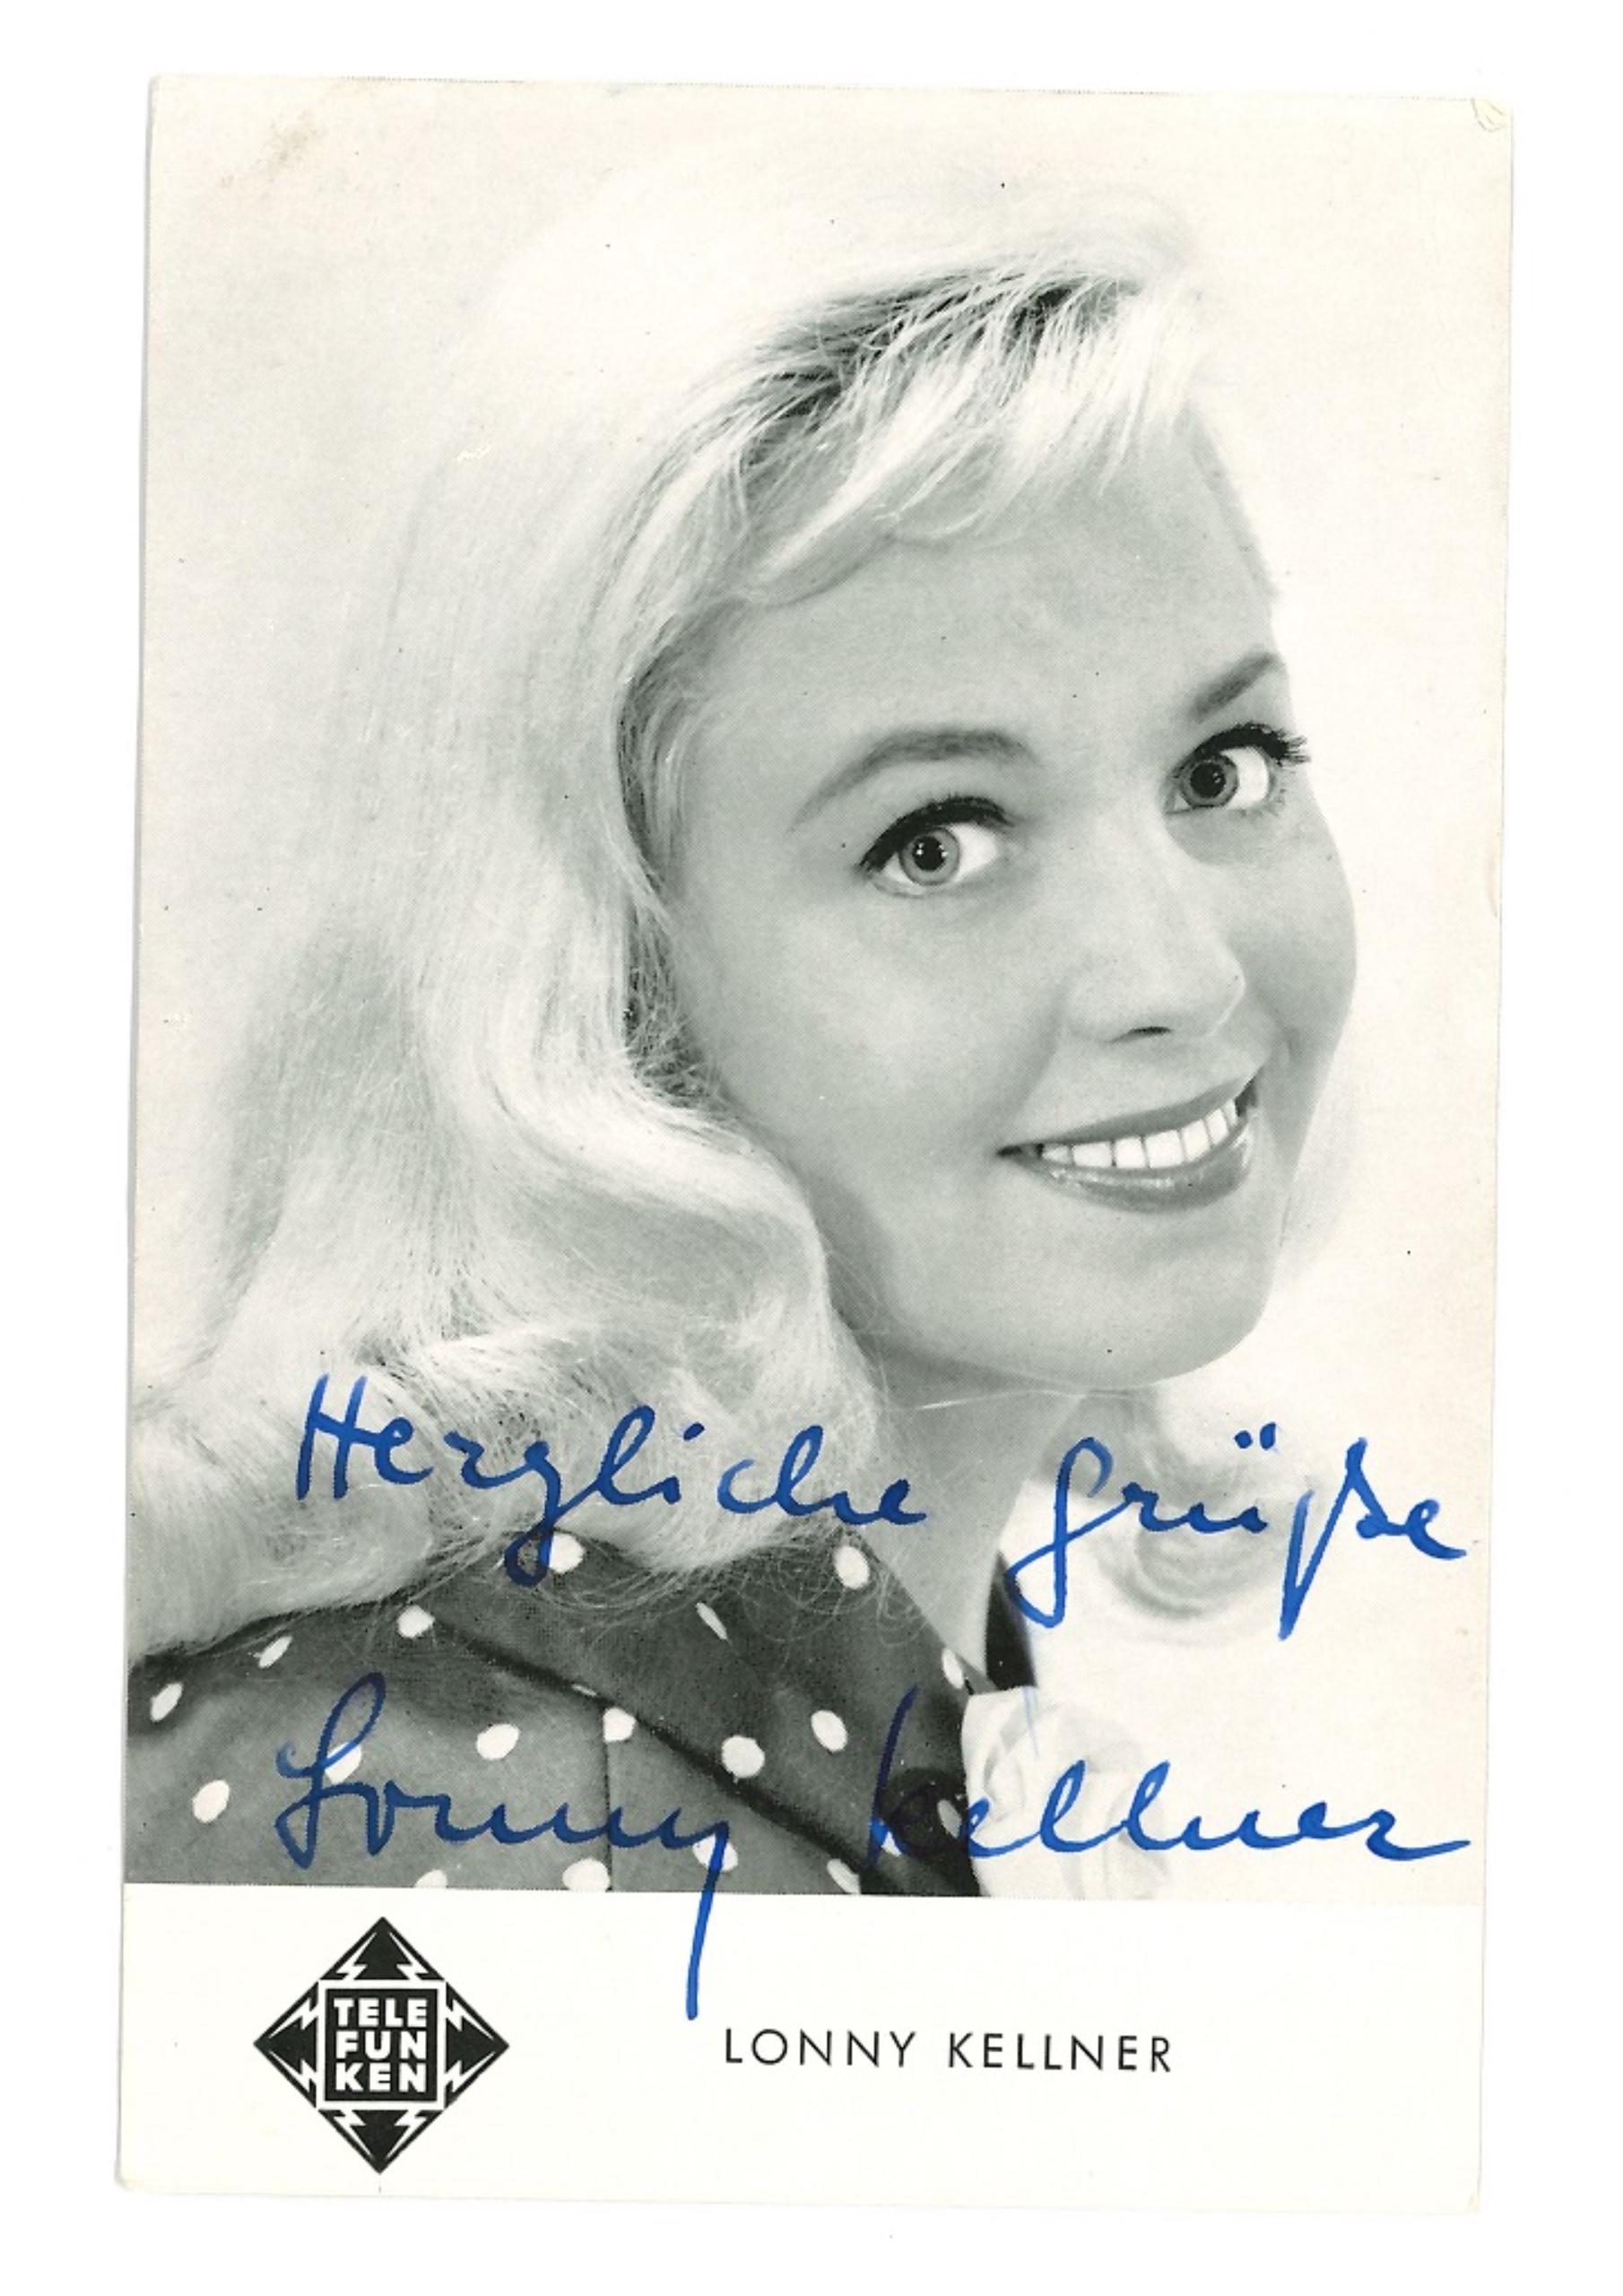 Portrait Photograph Unknown - Portrait autographié de Lonny Kellner - Affiche vintage b/w, années 1950